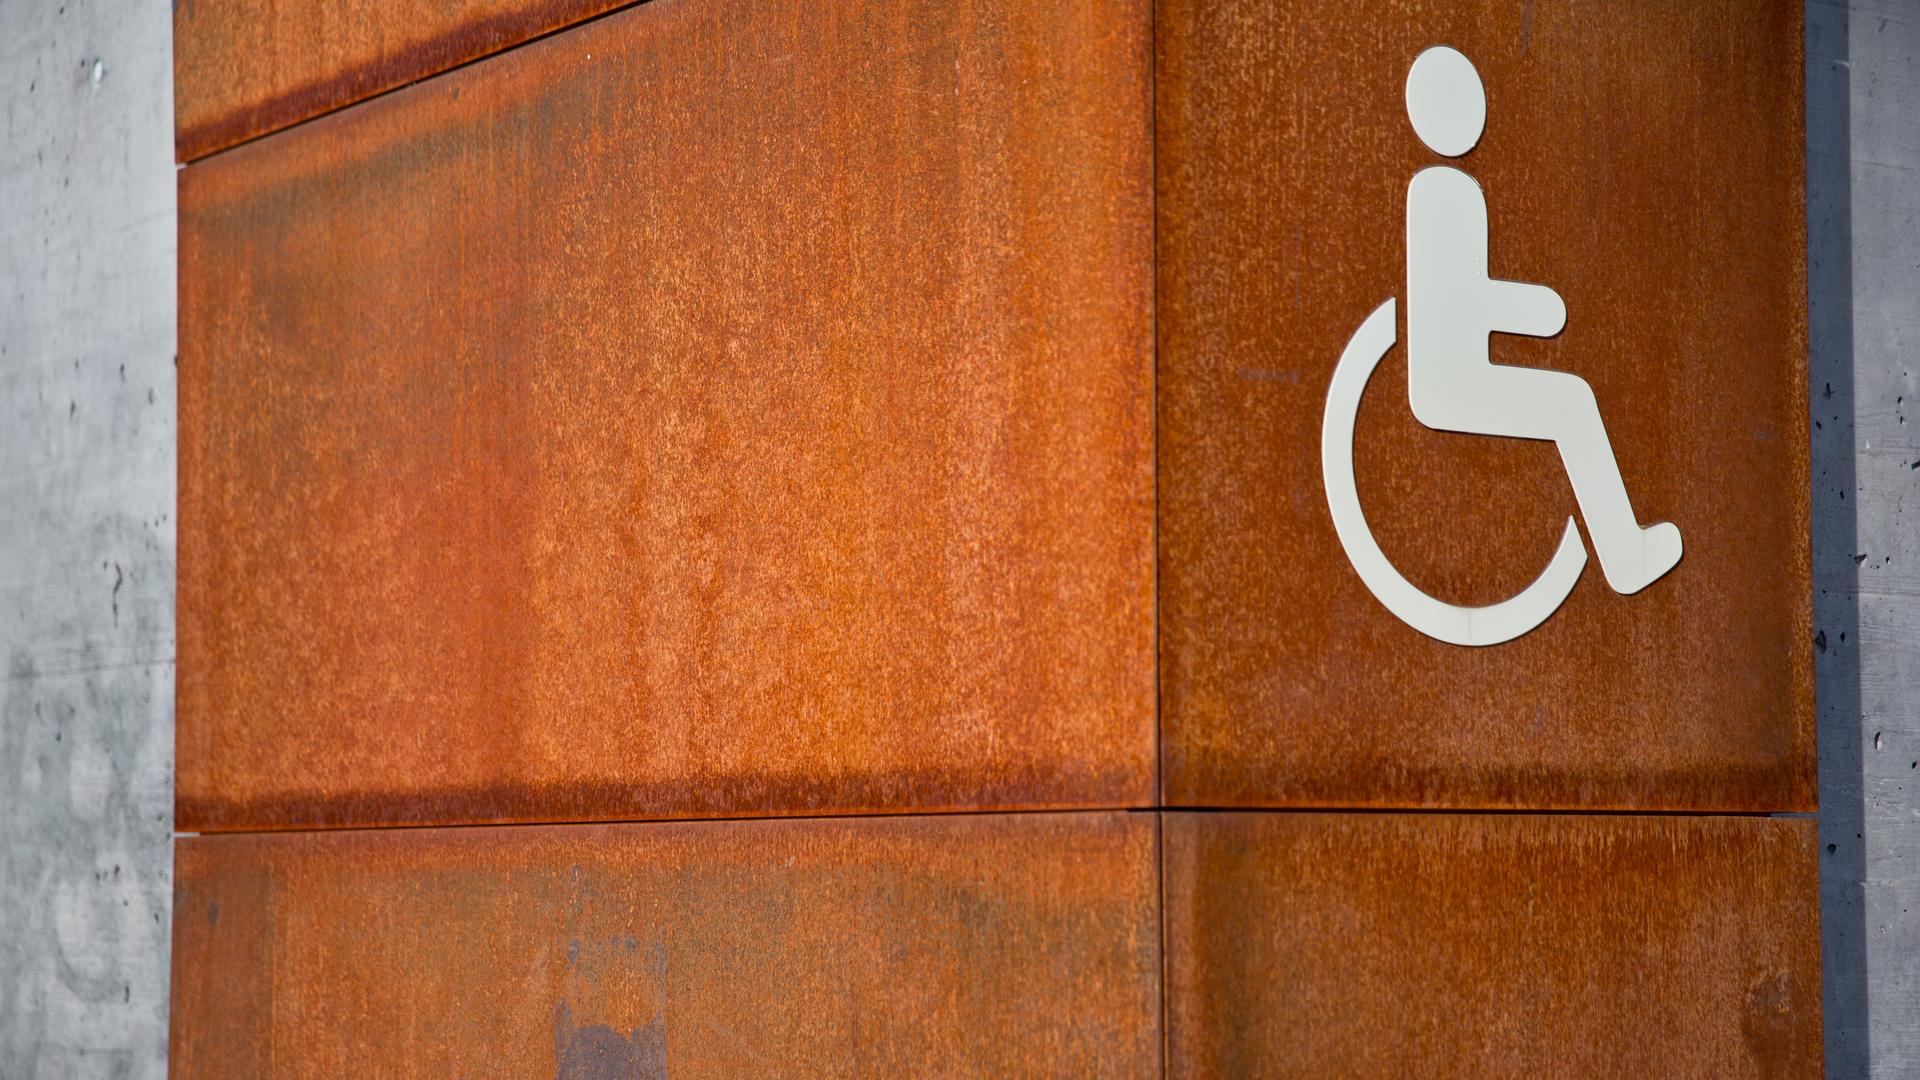 Das Bild zeigt das Piktogramm für Menschen mit Behinderte an einer Wand.